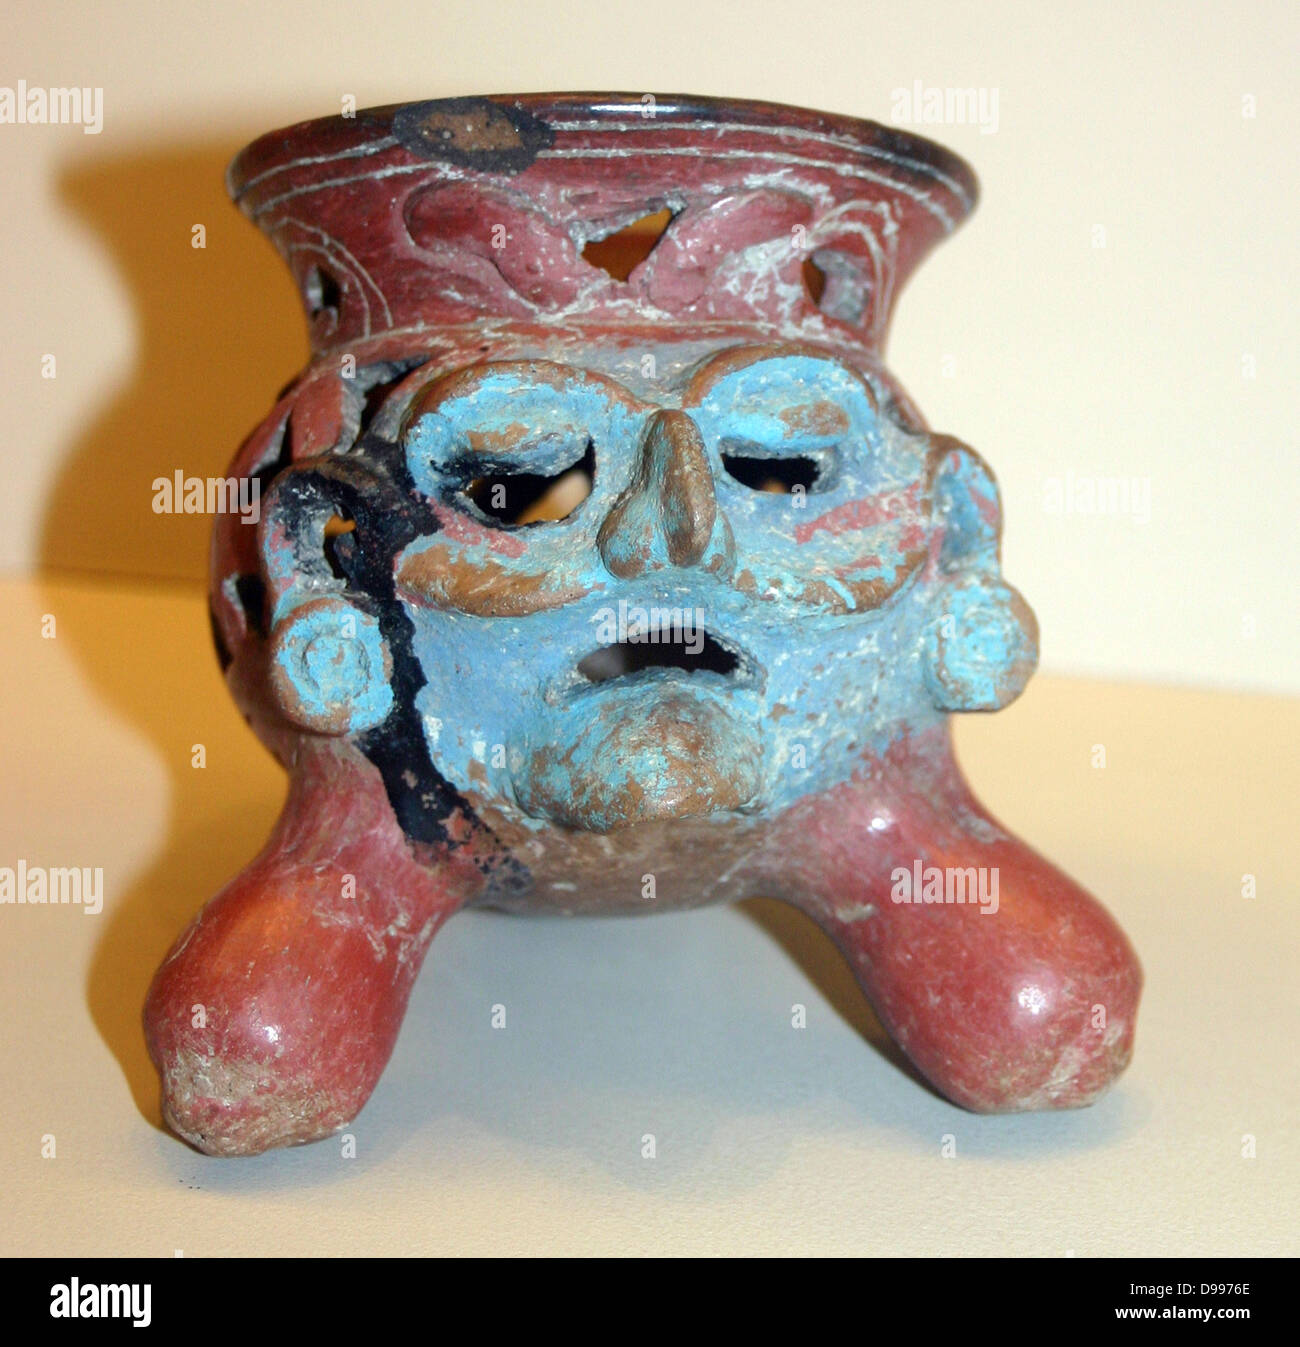 Treppiede in ceramica (bruciatore di incenso), Islas de Sacrificios, 900-1521 annuncio. Il volto del Dio di fuoco (pantheon azteco) Huehueteotl. Il colore blu rappresenta Tlaloc il dio della pioggia. Foto Stock